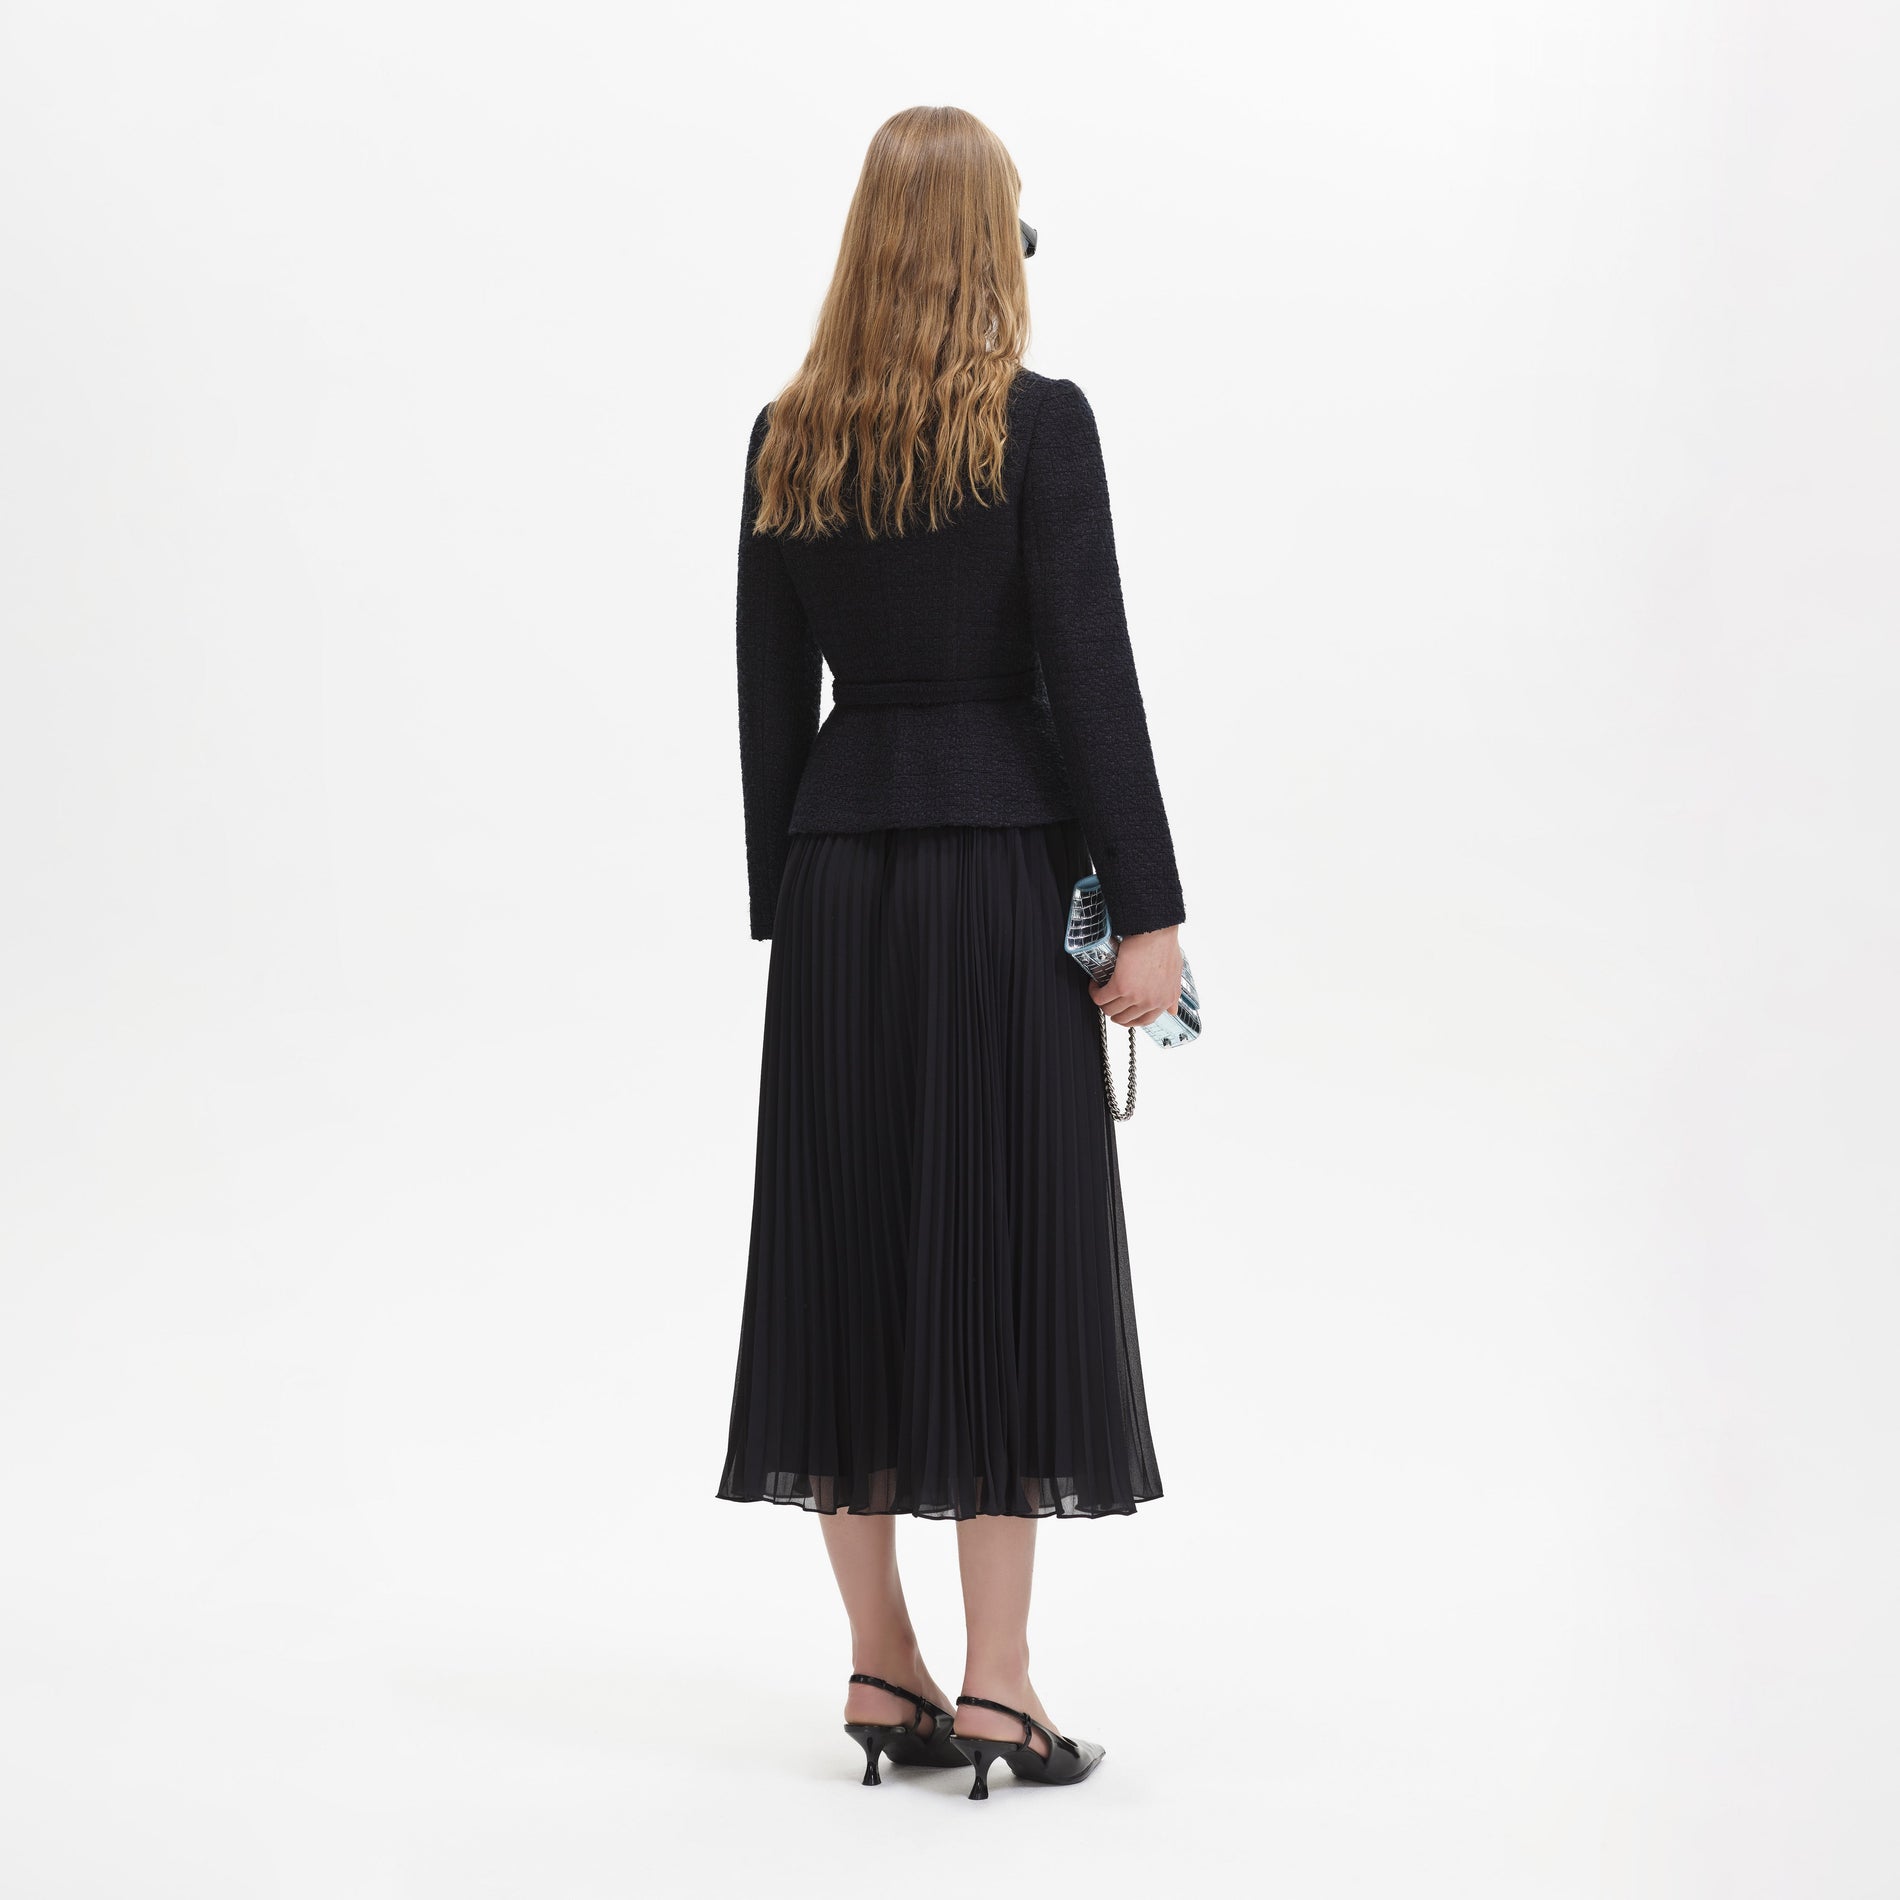 A woman wearing the Black Boucle Chiffon Midi Dress